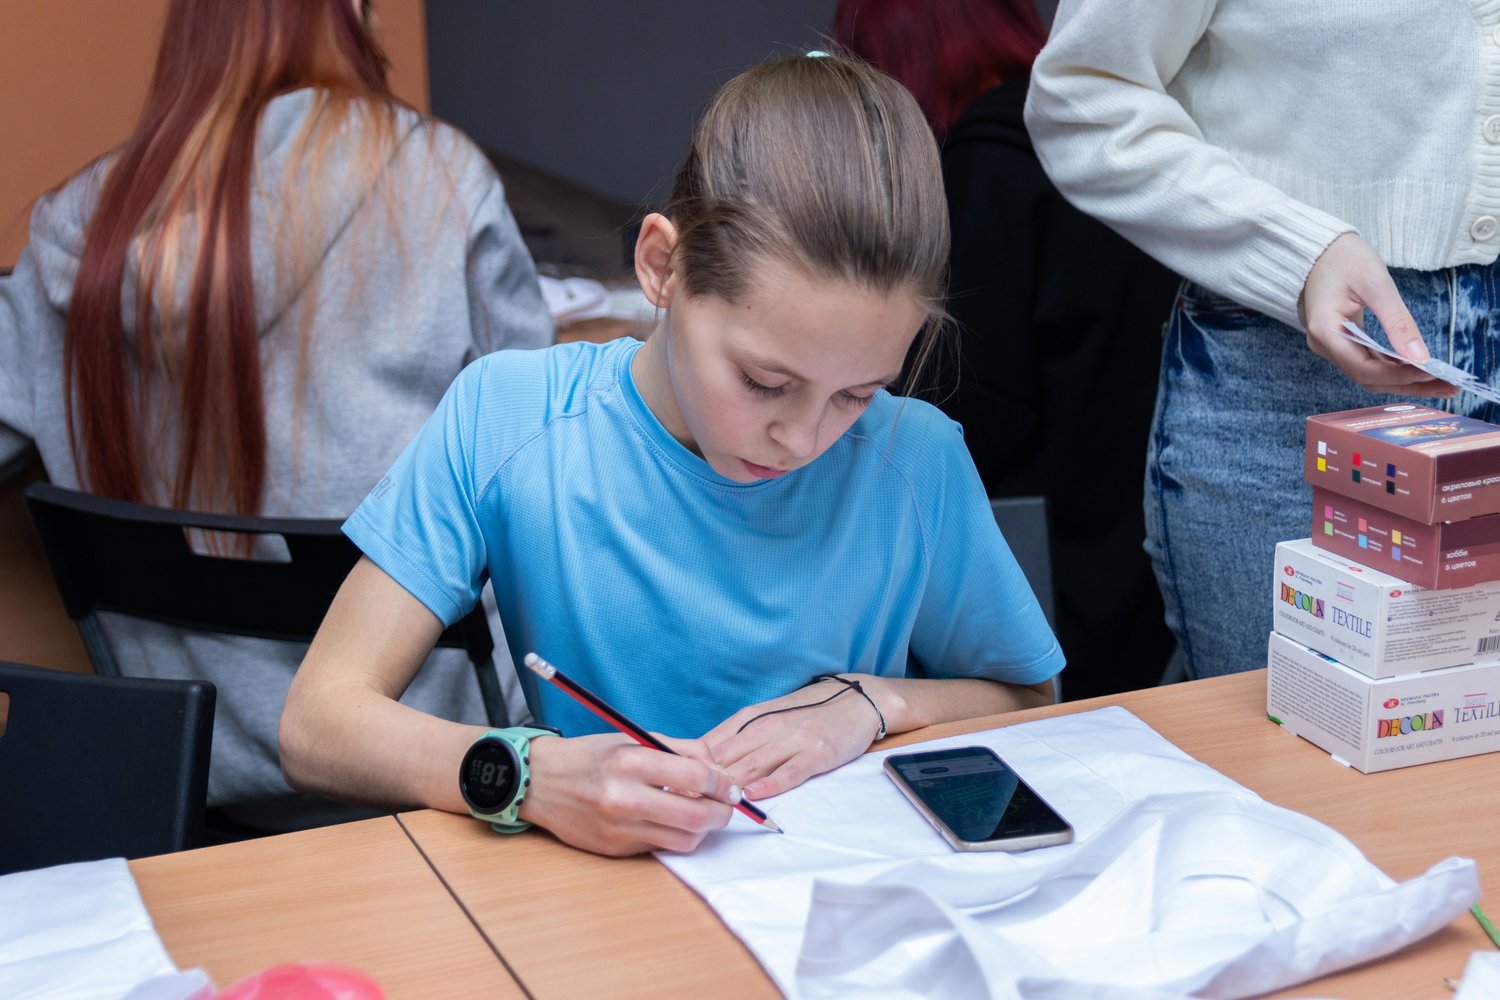 11 августа Псковский городской молодёжный центр приглашает молодёжь от 14 до 35 лет принять участие в бесплатном мастер-классе по живописи «Тропические цветы».